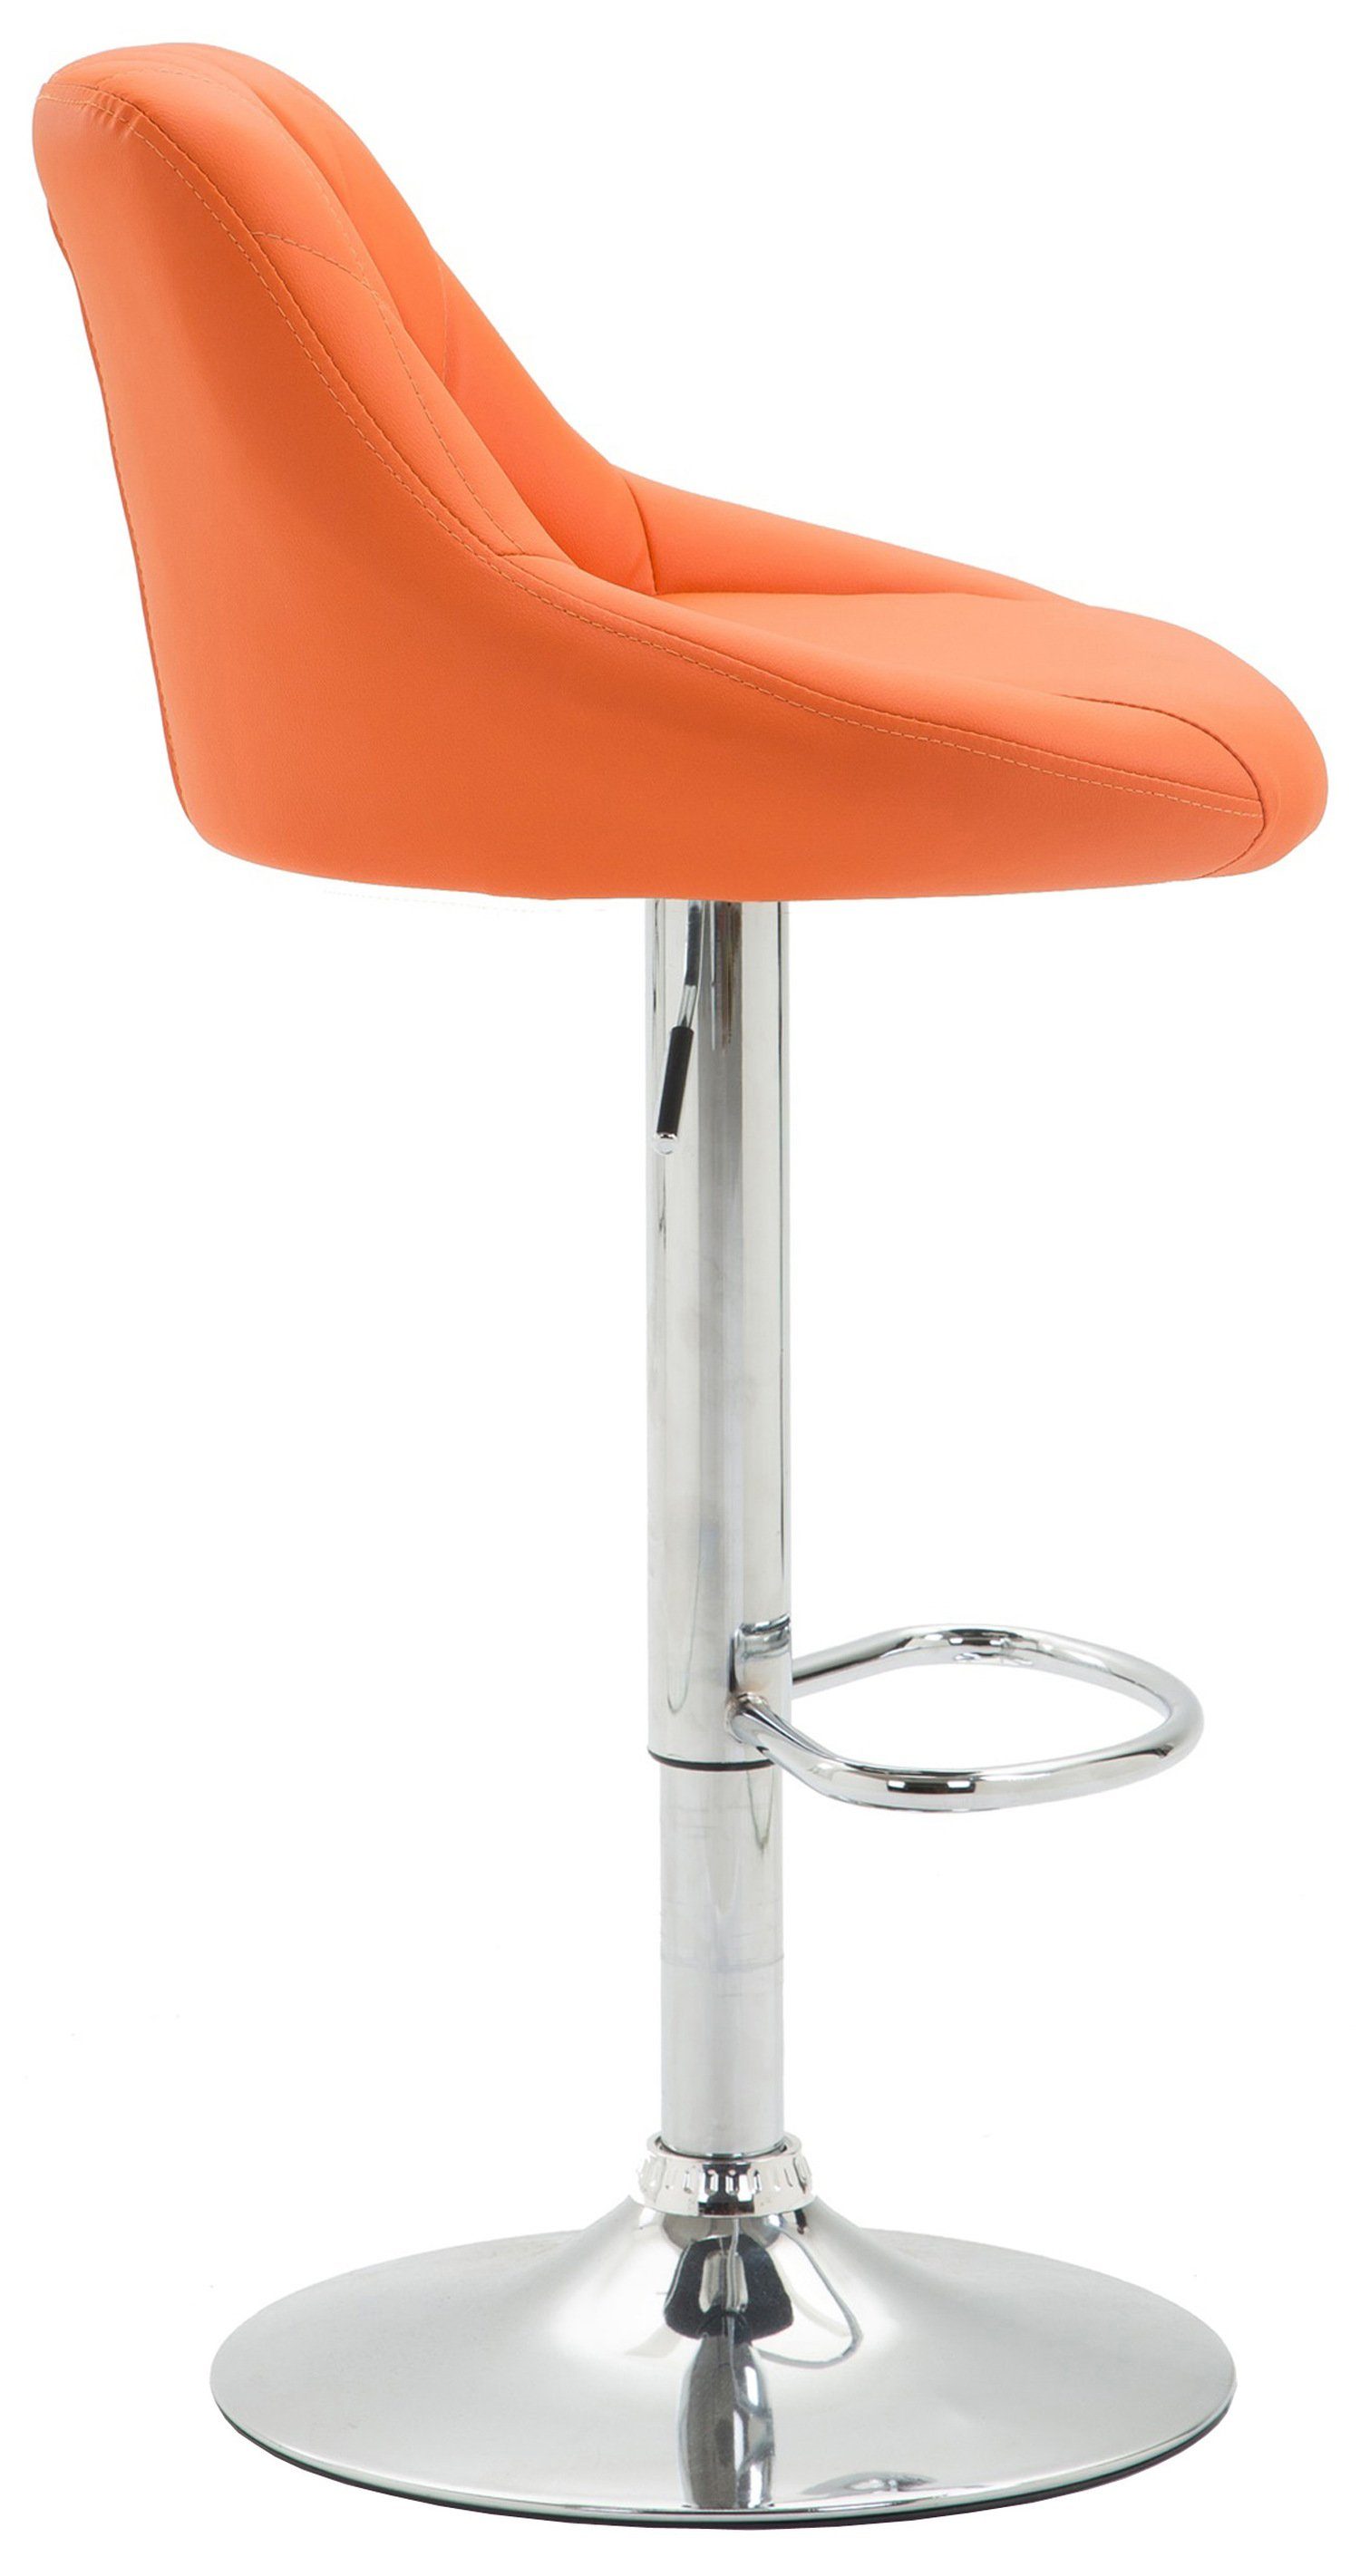 Sitzfläche: mit Fußstütze Theke Stahl für - - Barstuhl Lazius, Kunstleder höhenverstellbar Hocker & Barhocker Küche und Rückenlehne - 360° Orange drehbar TPFLiving Tresenhocker verchromter - -